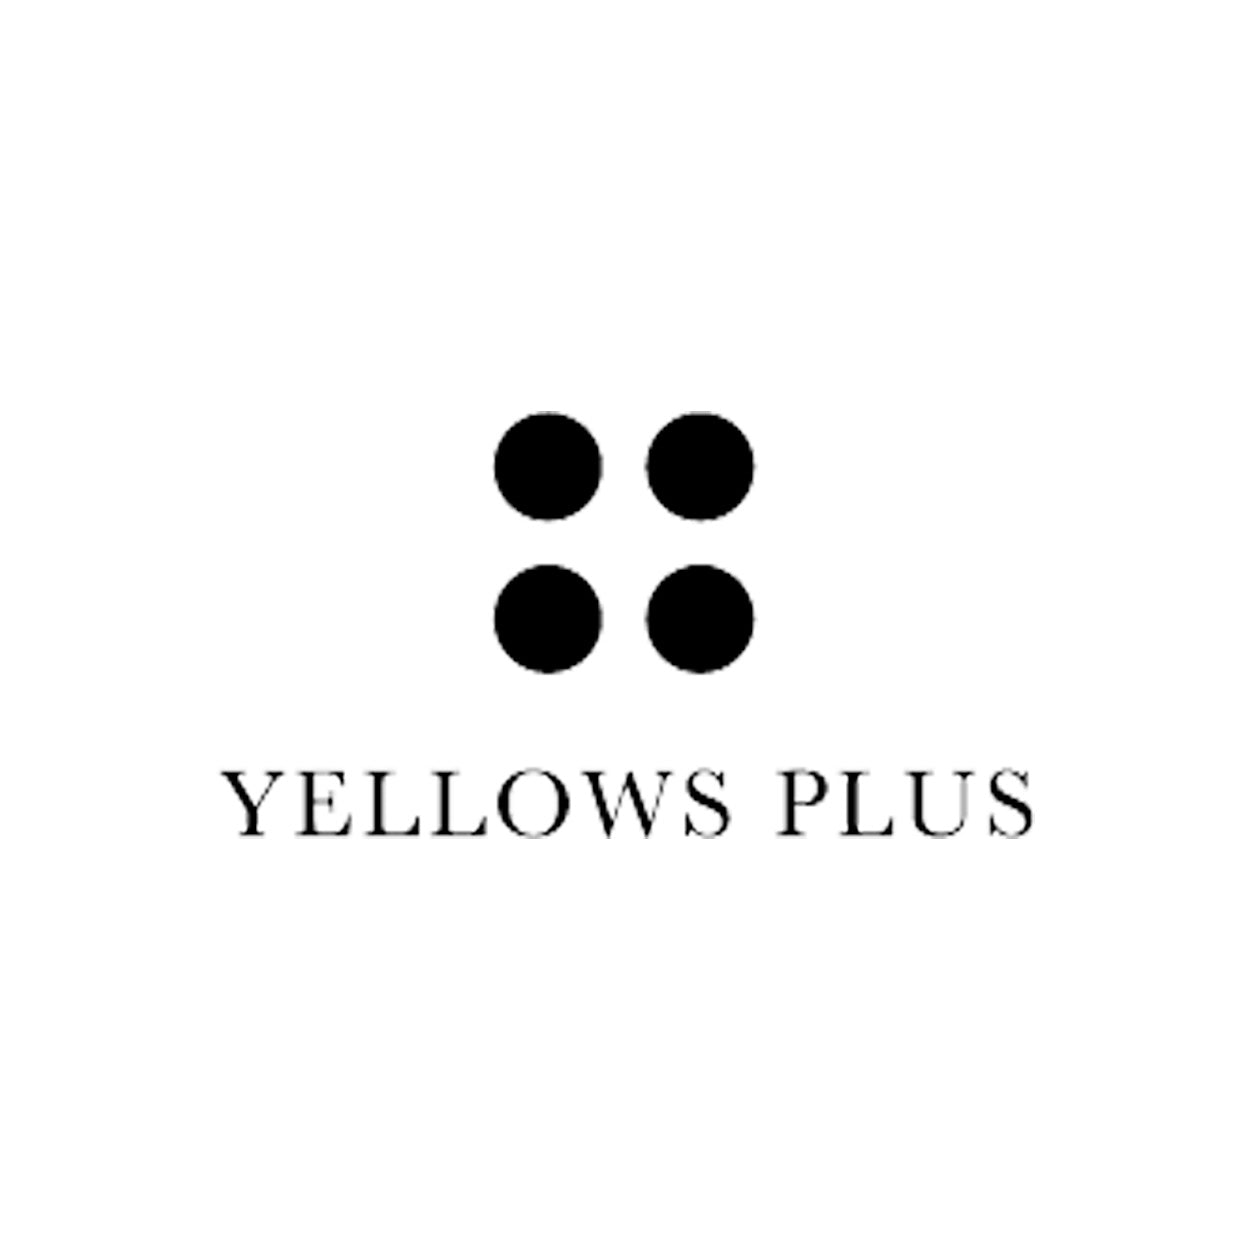 Yellows plus